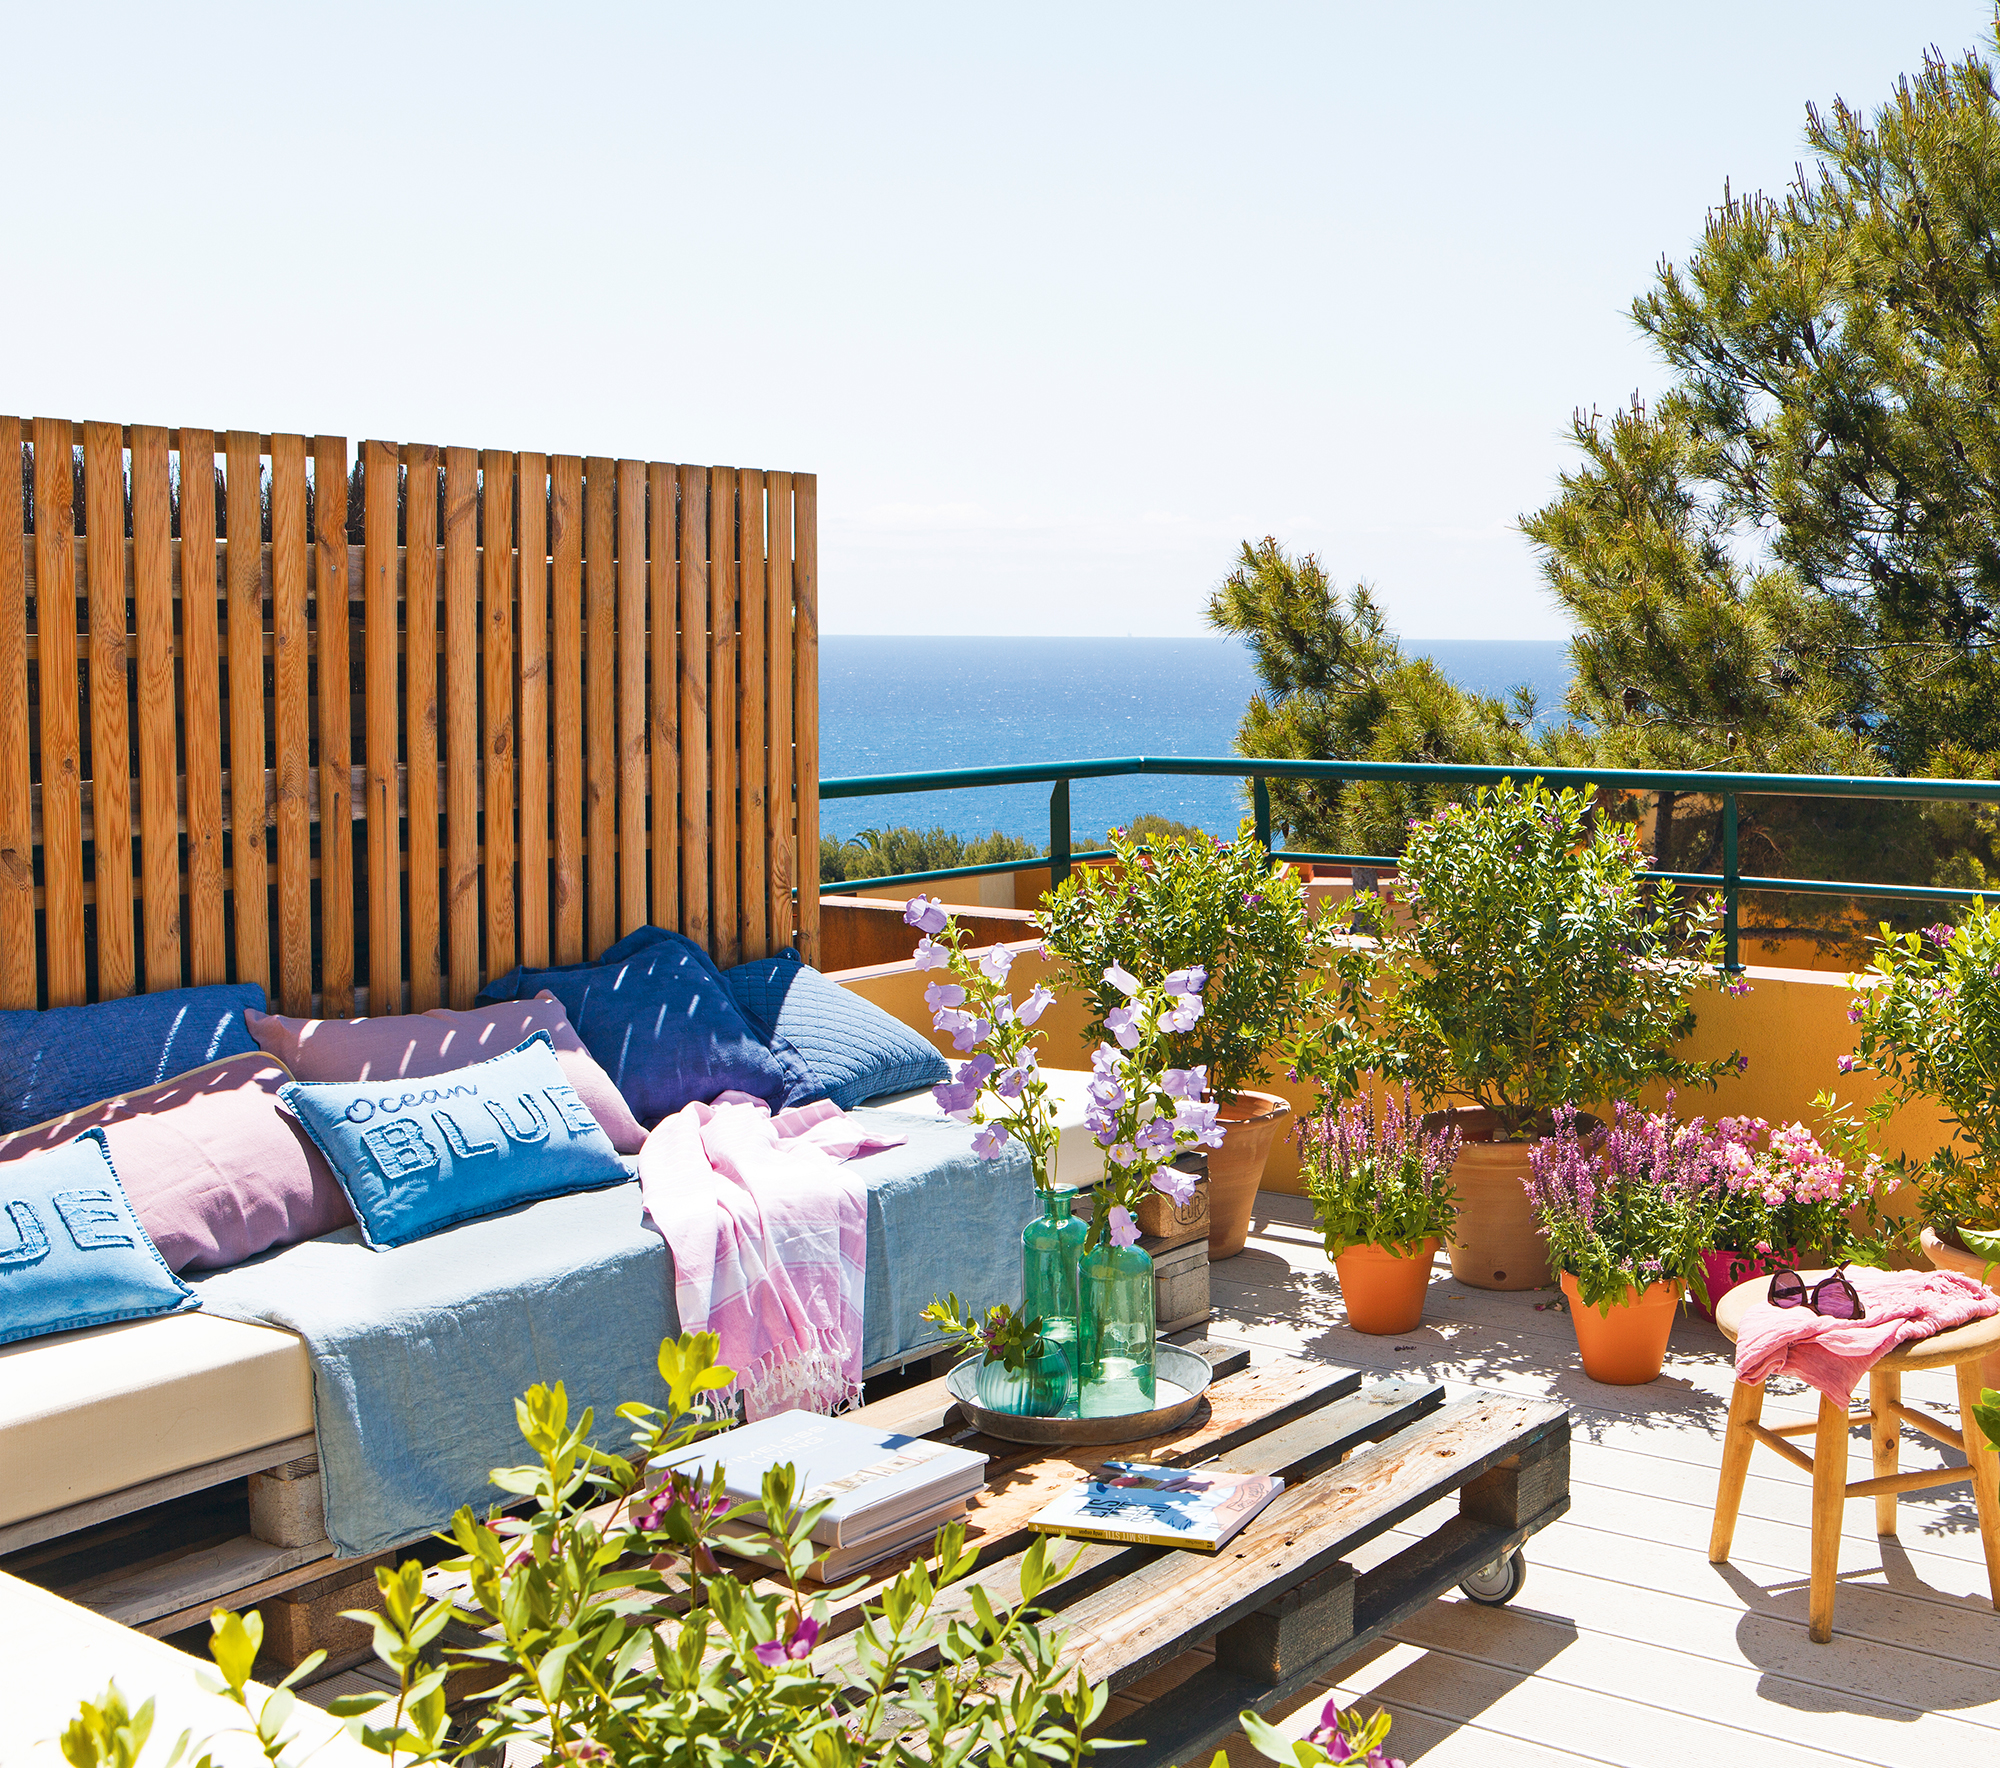 Una terraza de estilo chill out decorada con palés.